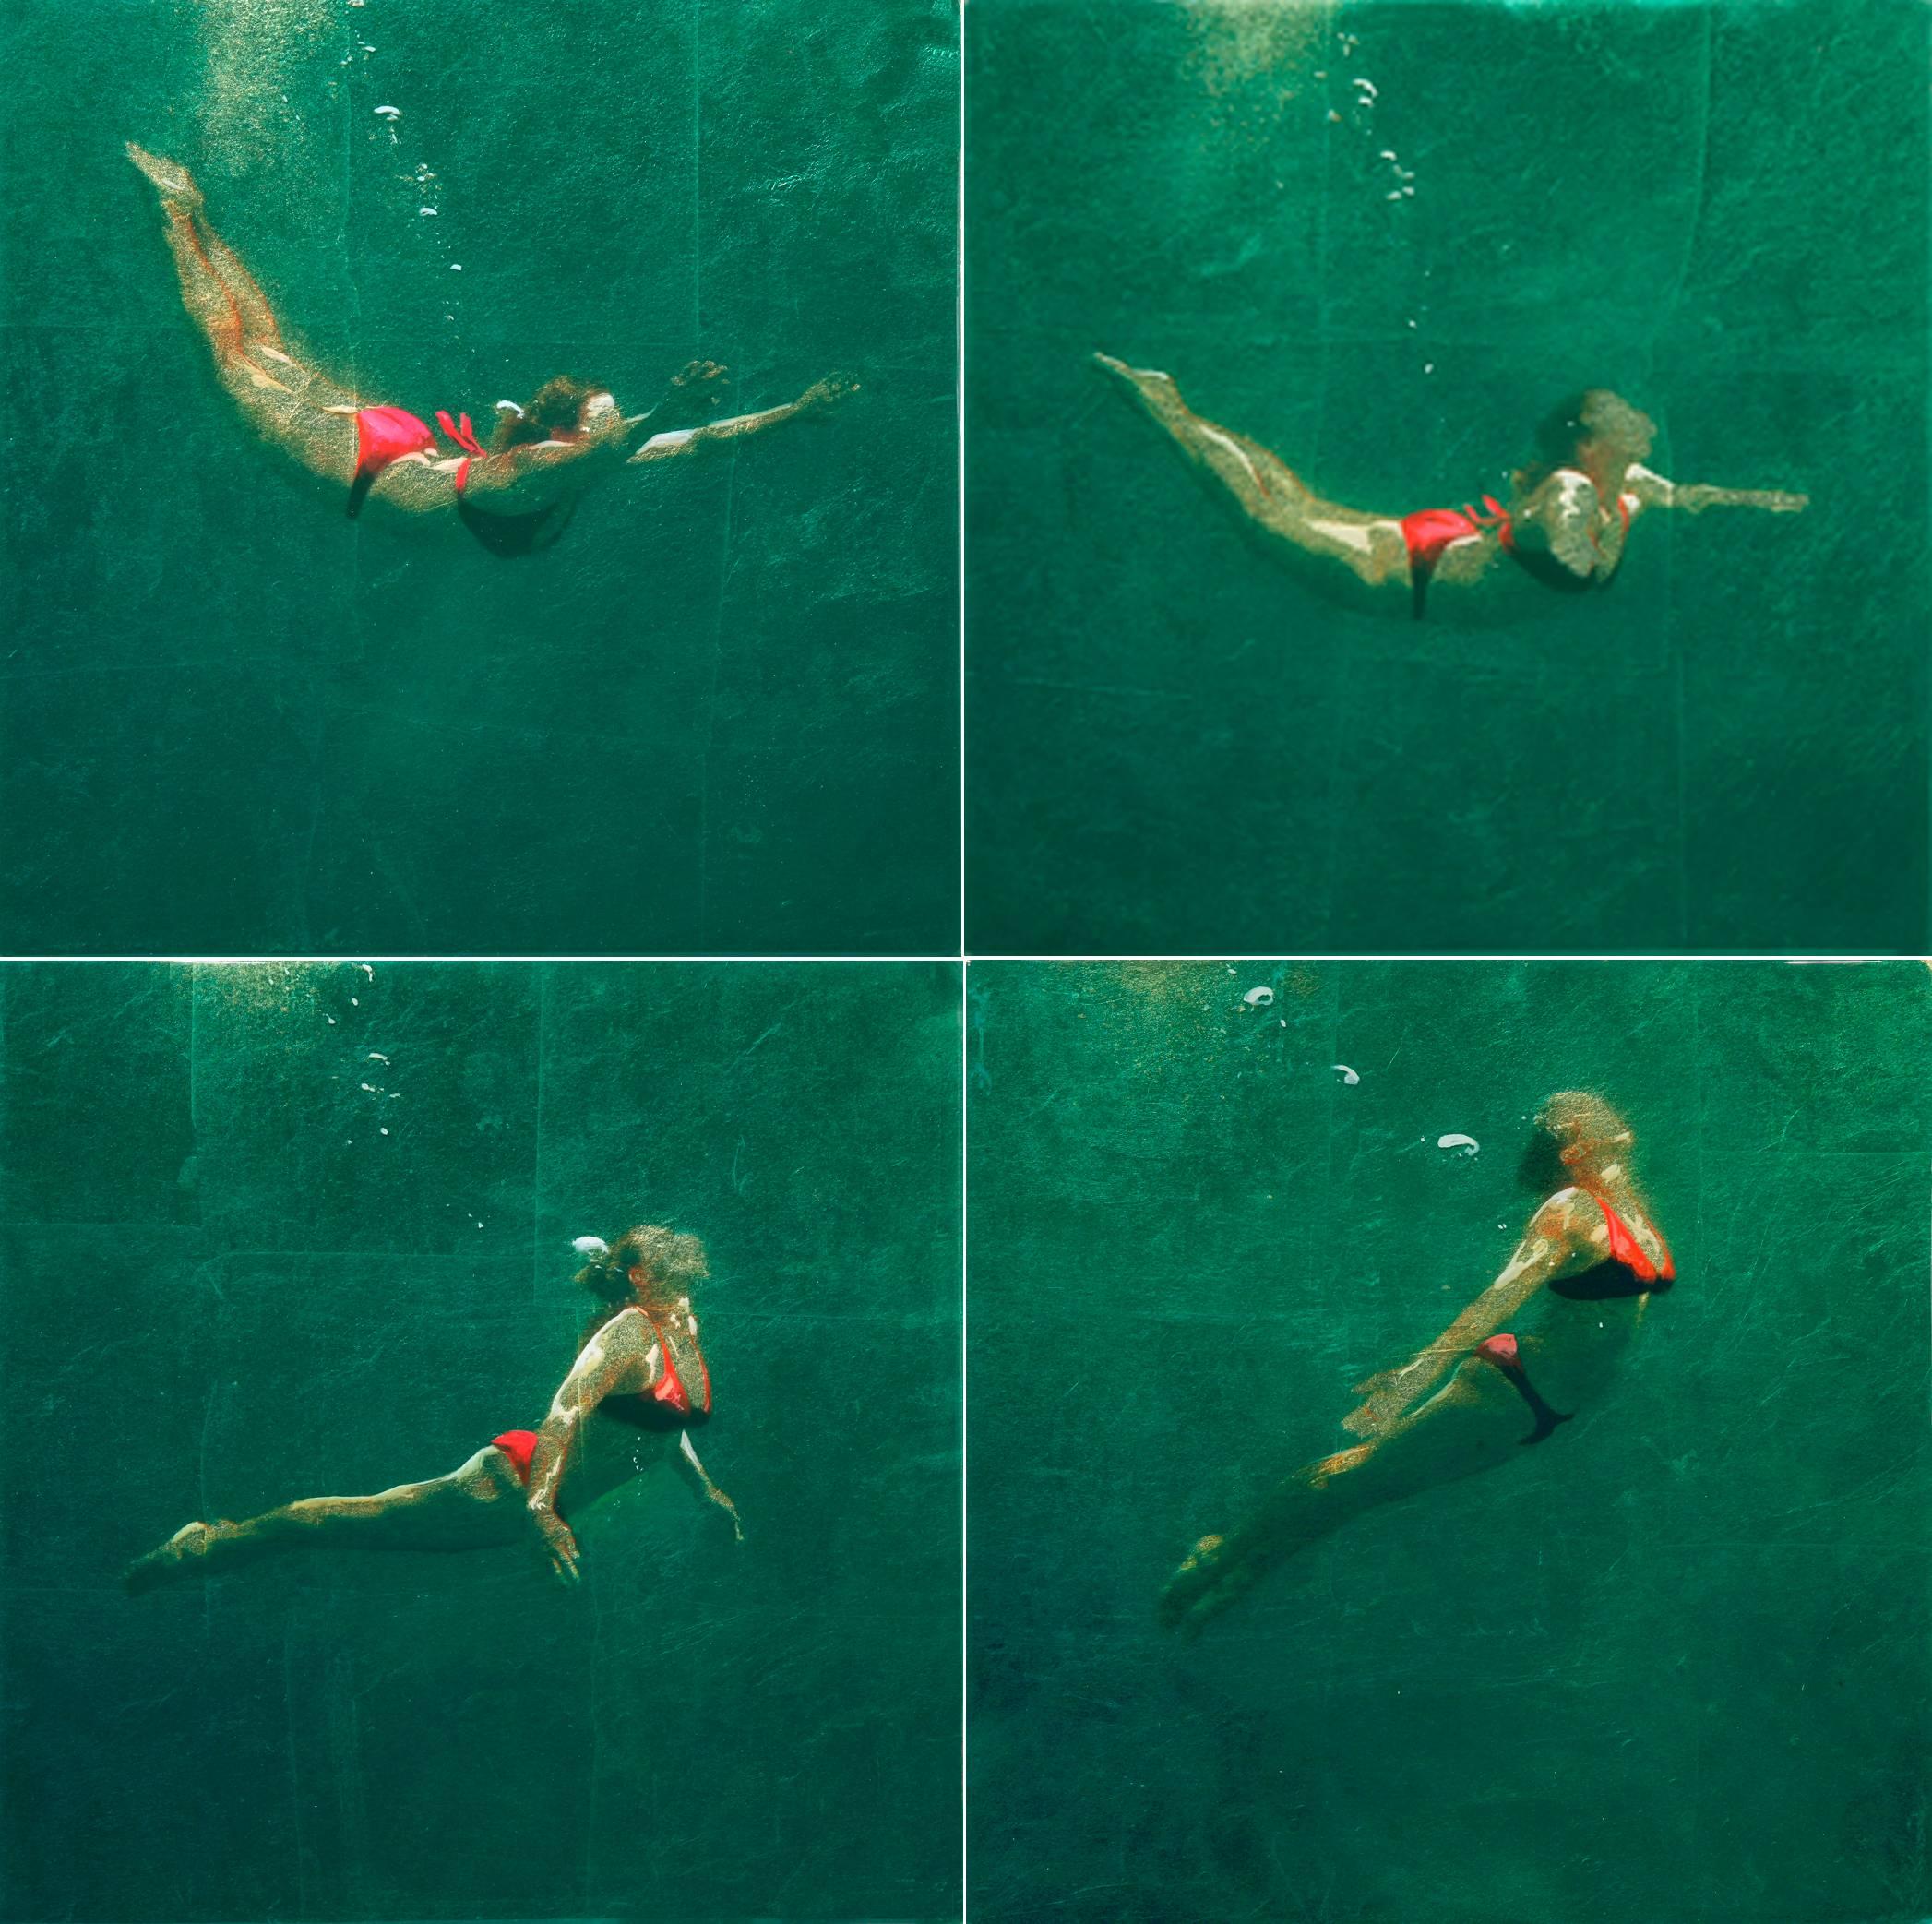 RISING UP (QUAD), photo-realism, women underwater, green water, red bikini - Mixed Media Art by Eric Zener